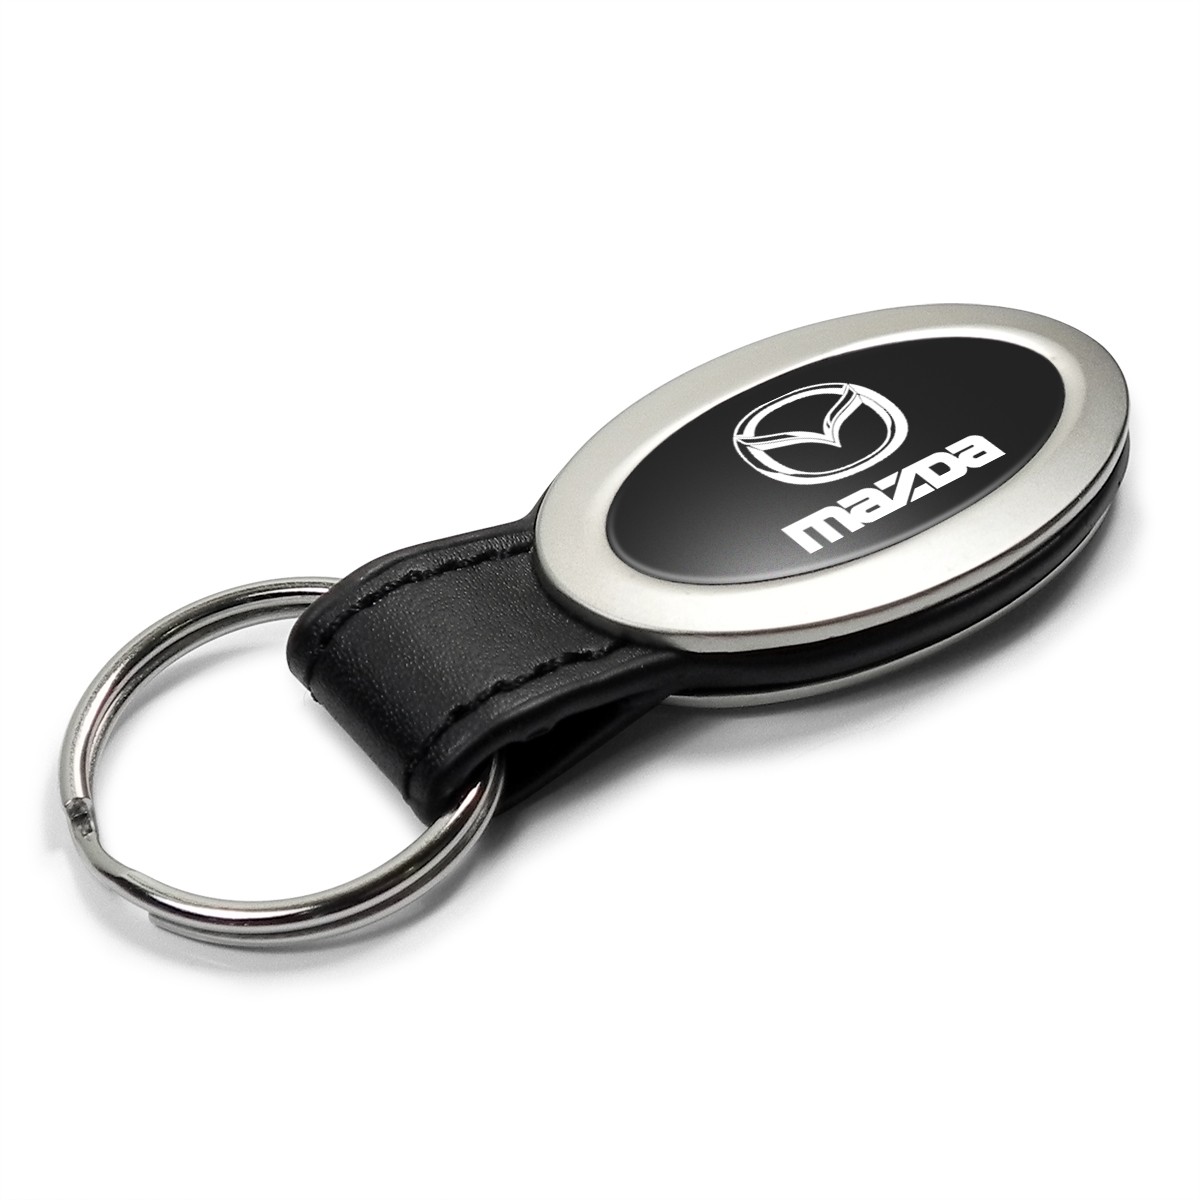 Mazda Schlüsselanhänger Einkaufschip inkl. Versand in Frankfurt am